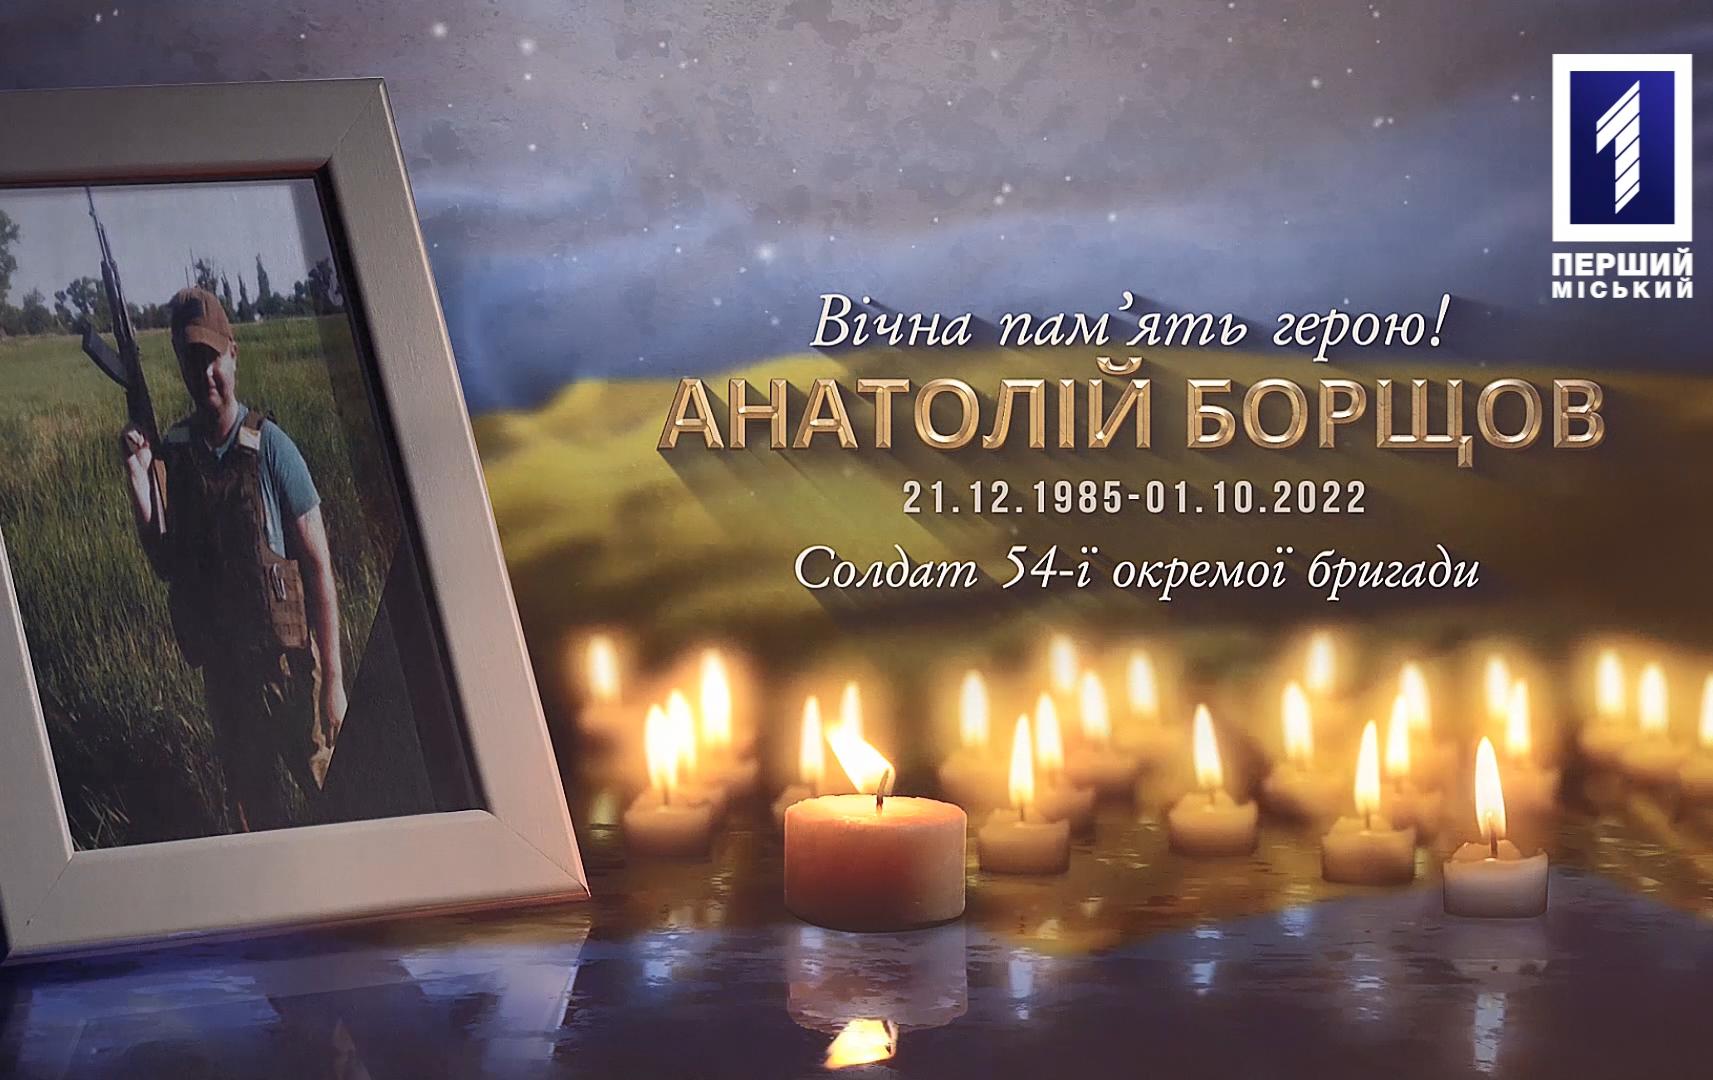 Криворожцы простились с патриотом Анатолием Борщевым, погибшим в бою во время вражеского артобстрела